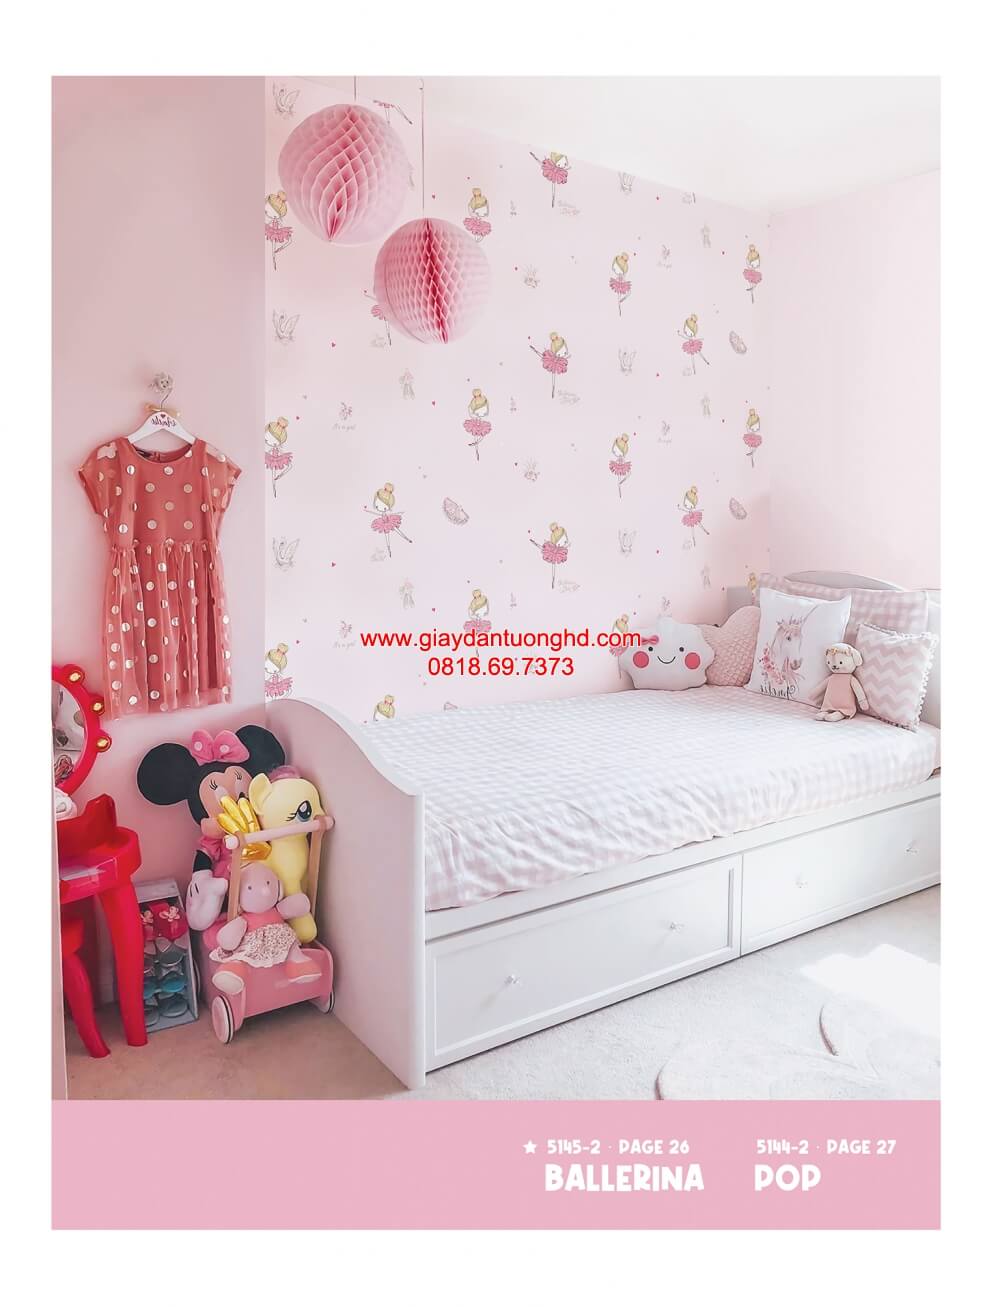 Giấy dán tường trẻ em màu hồng, giấy dán phòng bé gái màu hồng, giấy dán tường búp bê màu hồng cho bé